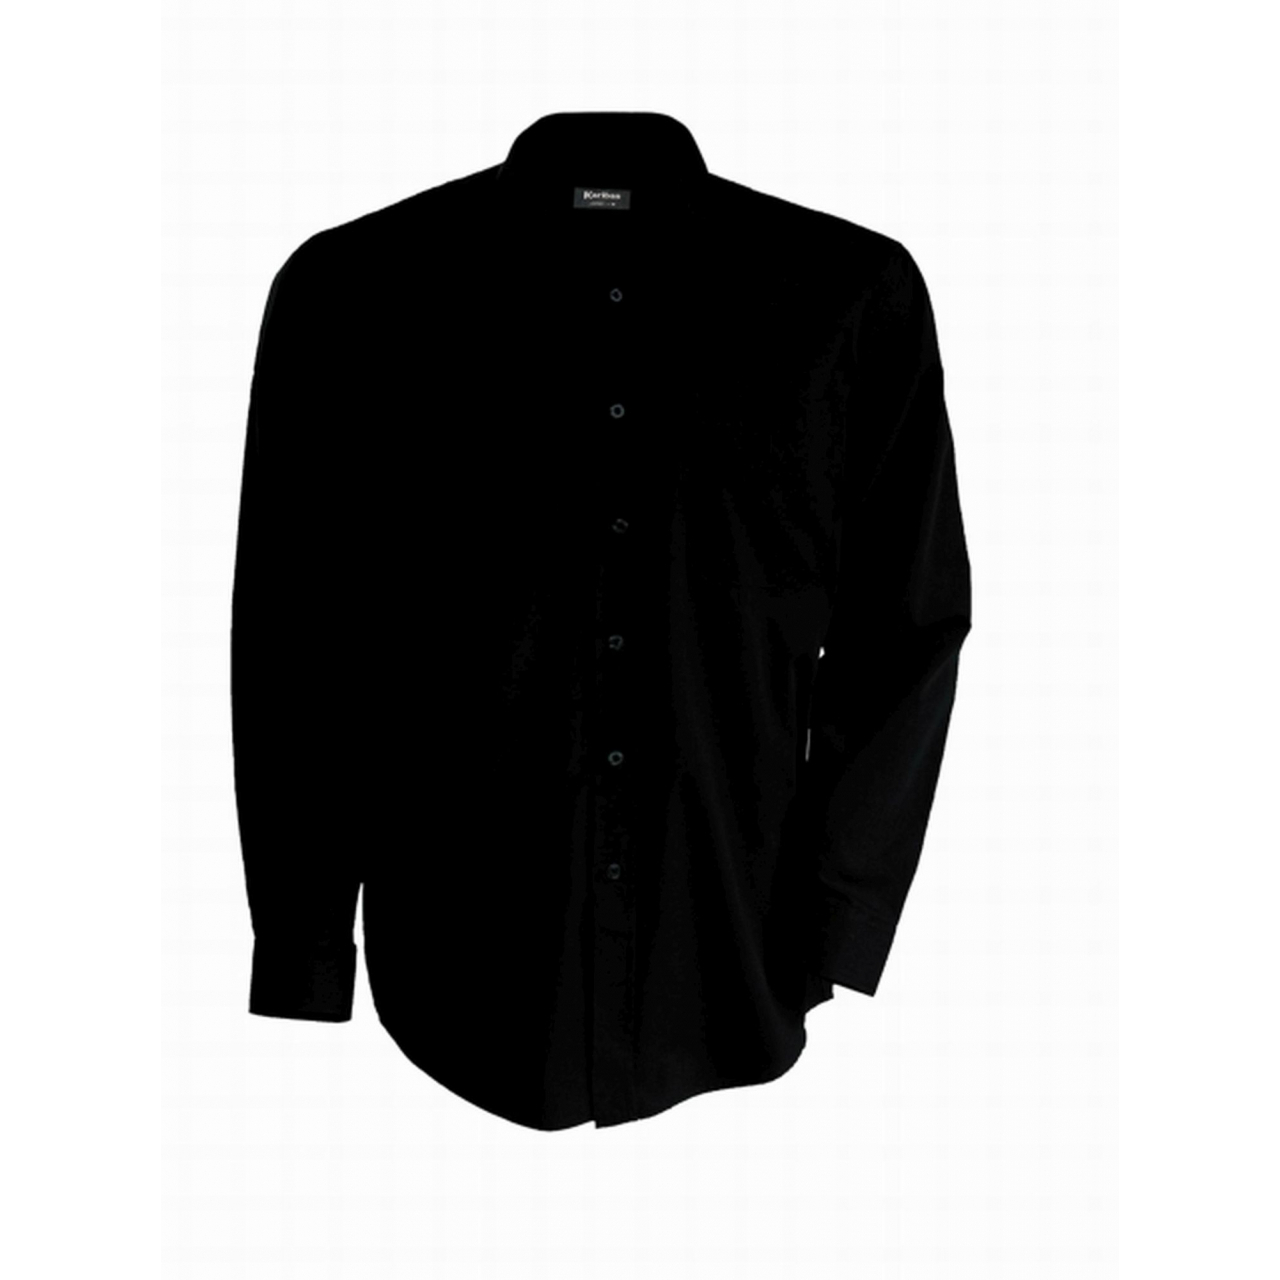 Pánská košile Kariban dlouhý rukáv v nežehlivé úpravě - černá, M